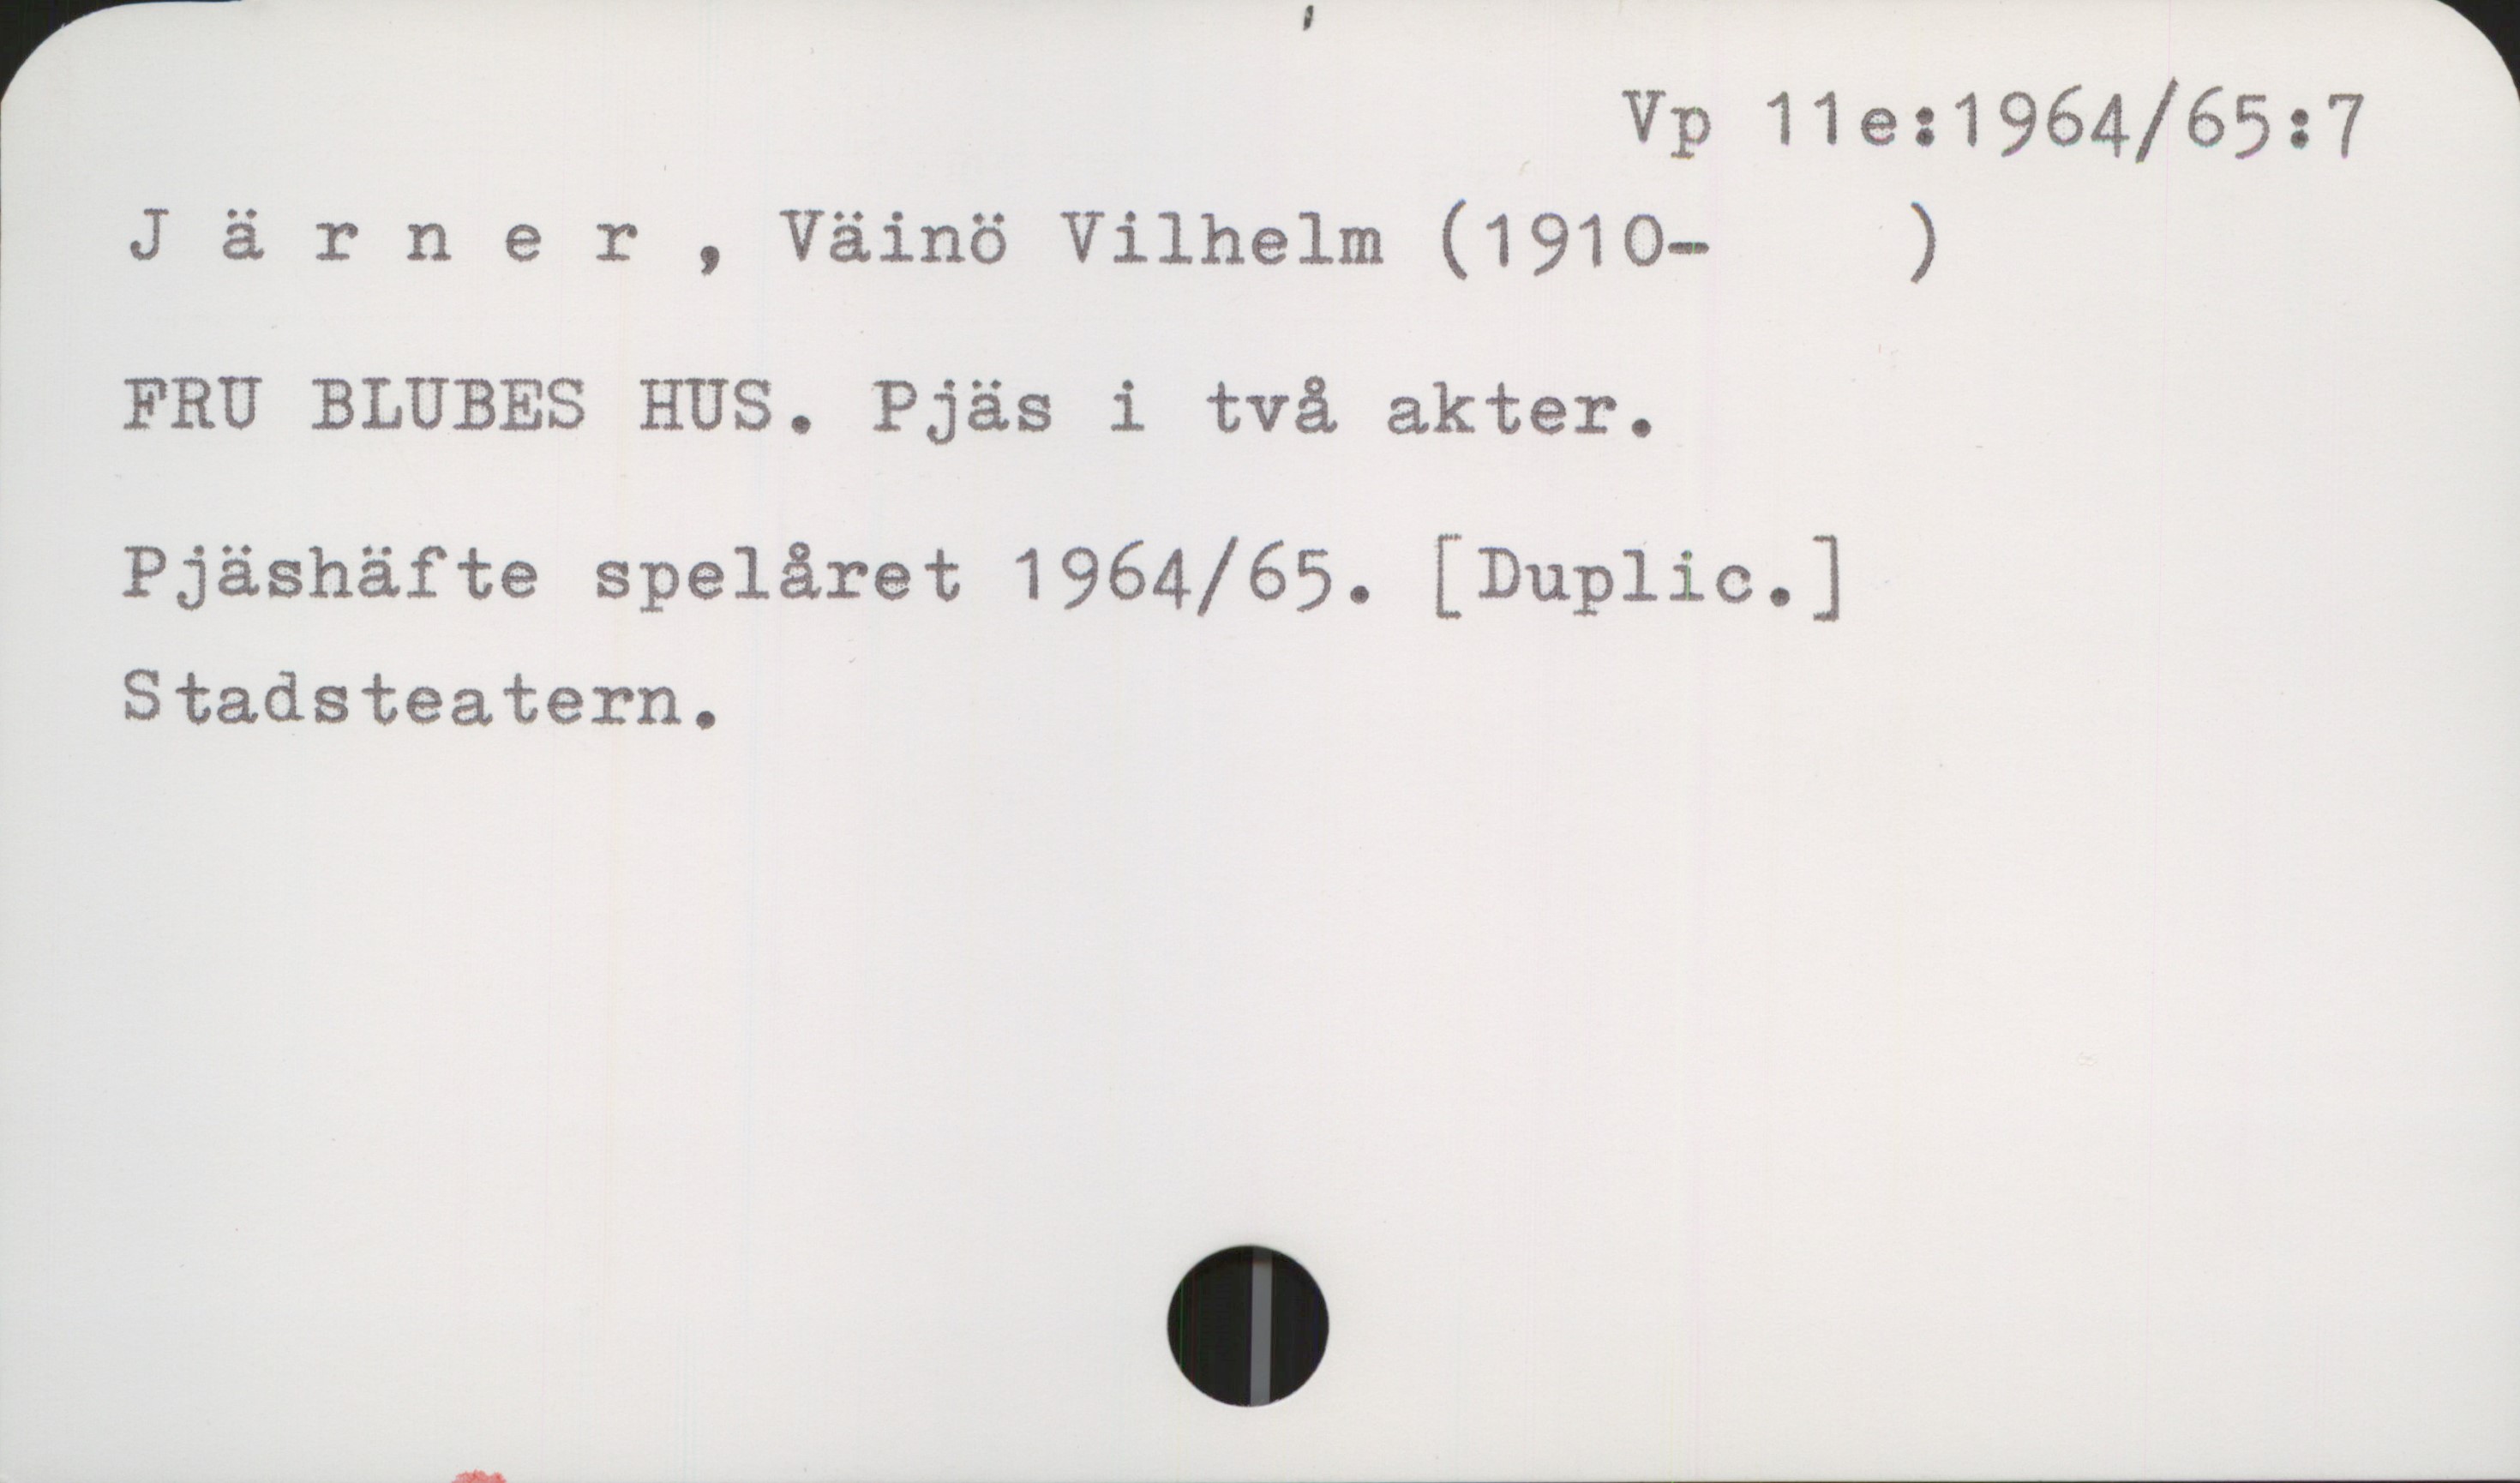 Järner, Väinö Vilhelm (1910-1997) Vp 11e:1964/65:7

Järner , Väinö Vilhelm (1910- )

FRU BLUBES HUS. Pjäs i två akter.

Pjäshäfte spelåret 1964/65. [Duplic. ]
Stadsteatern